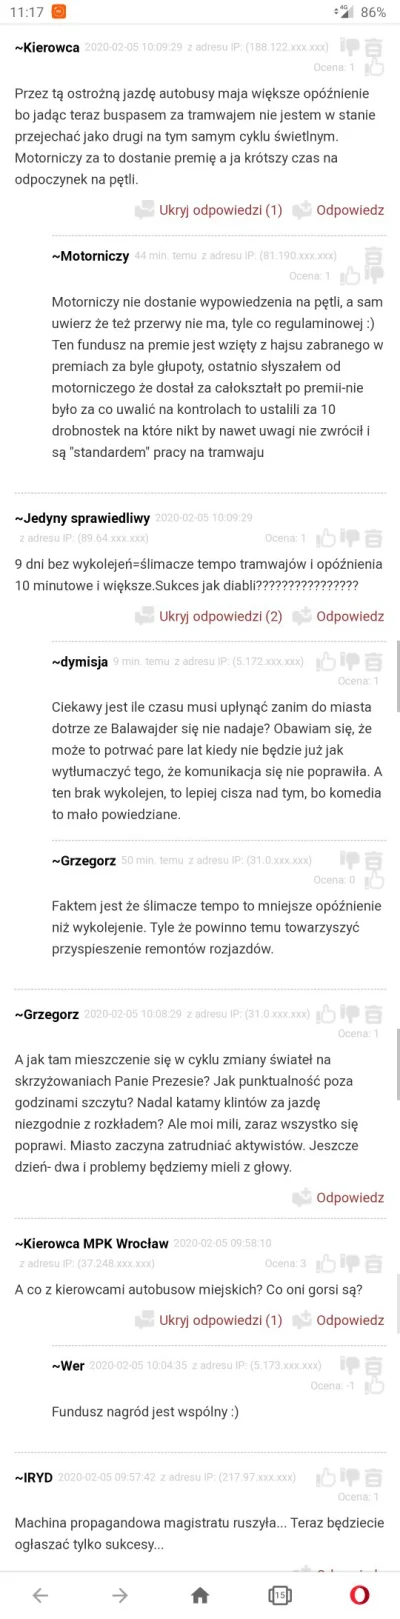 TOM3K88 - @Darth_Gohan zobacz komentarze ze strony radia Wrocław pod artykułem na ten...